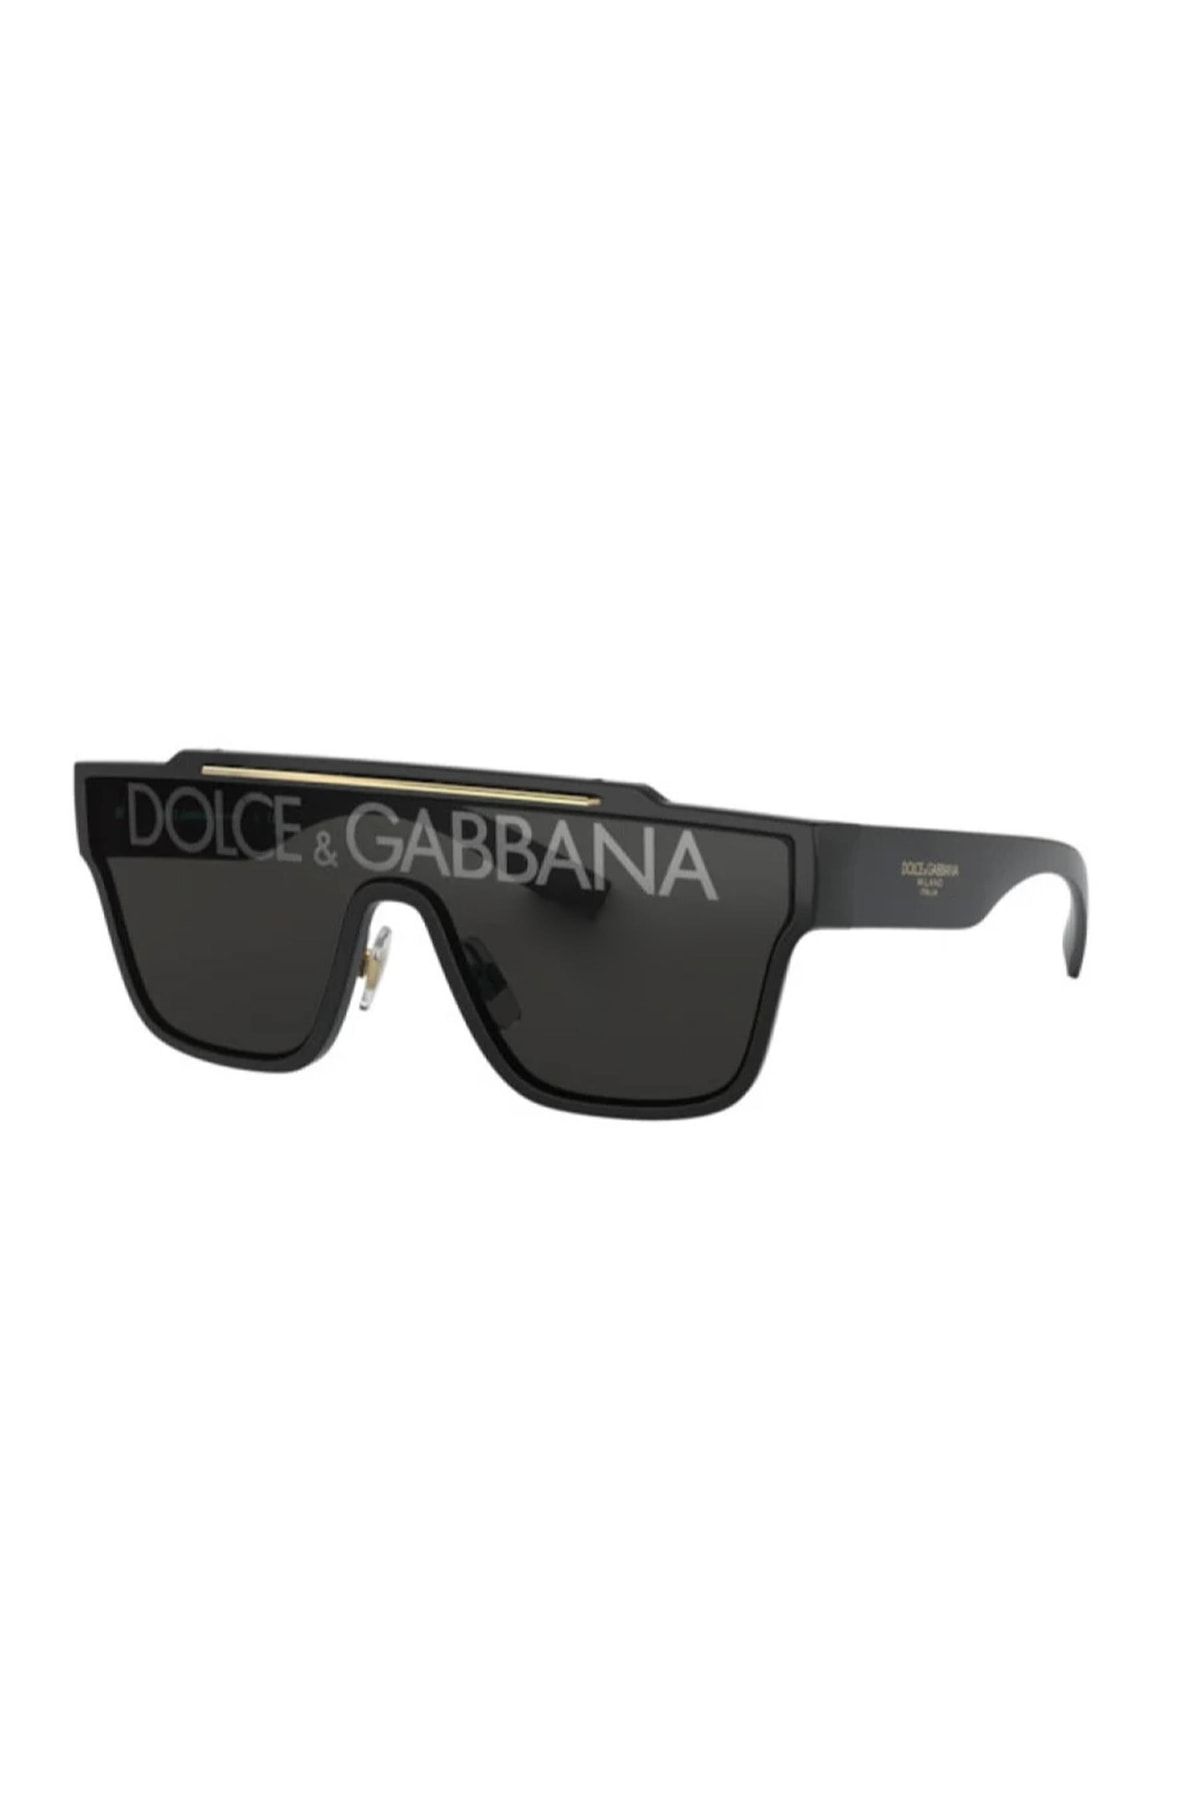 Dolce&Gabbana Dolce&gabbana 6125 501/m 35 Unisex Siyah Köşeli Çerçeve Güneş Gözlüğü